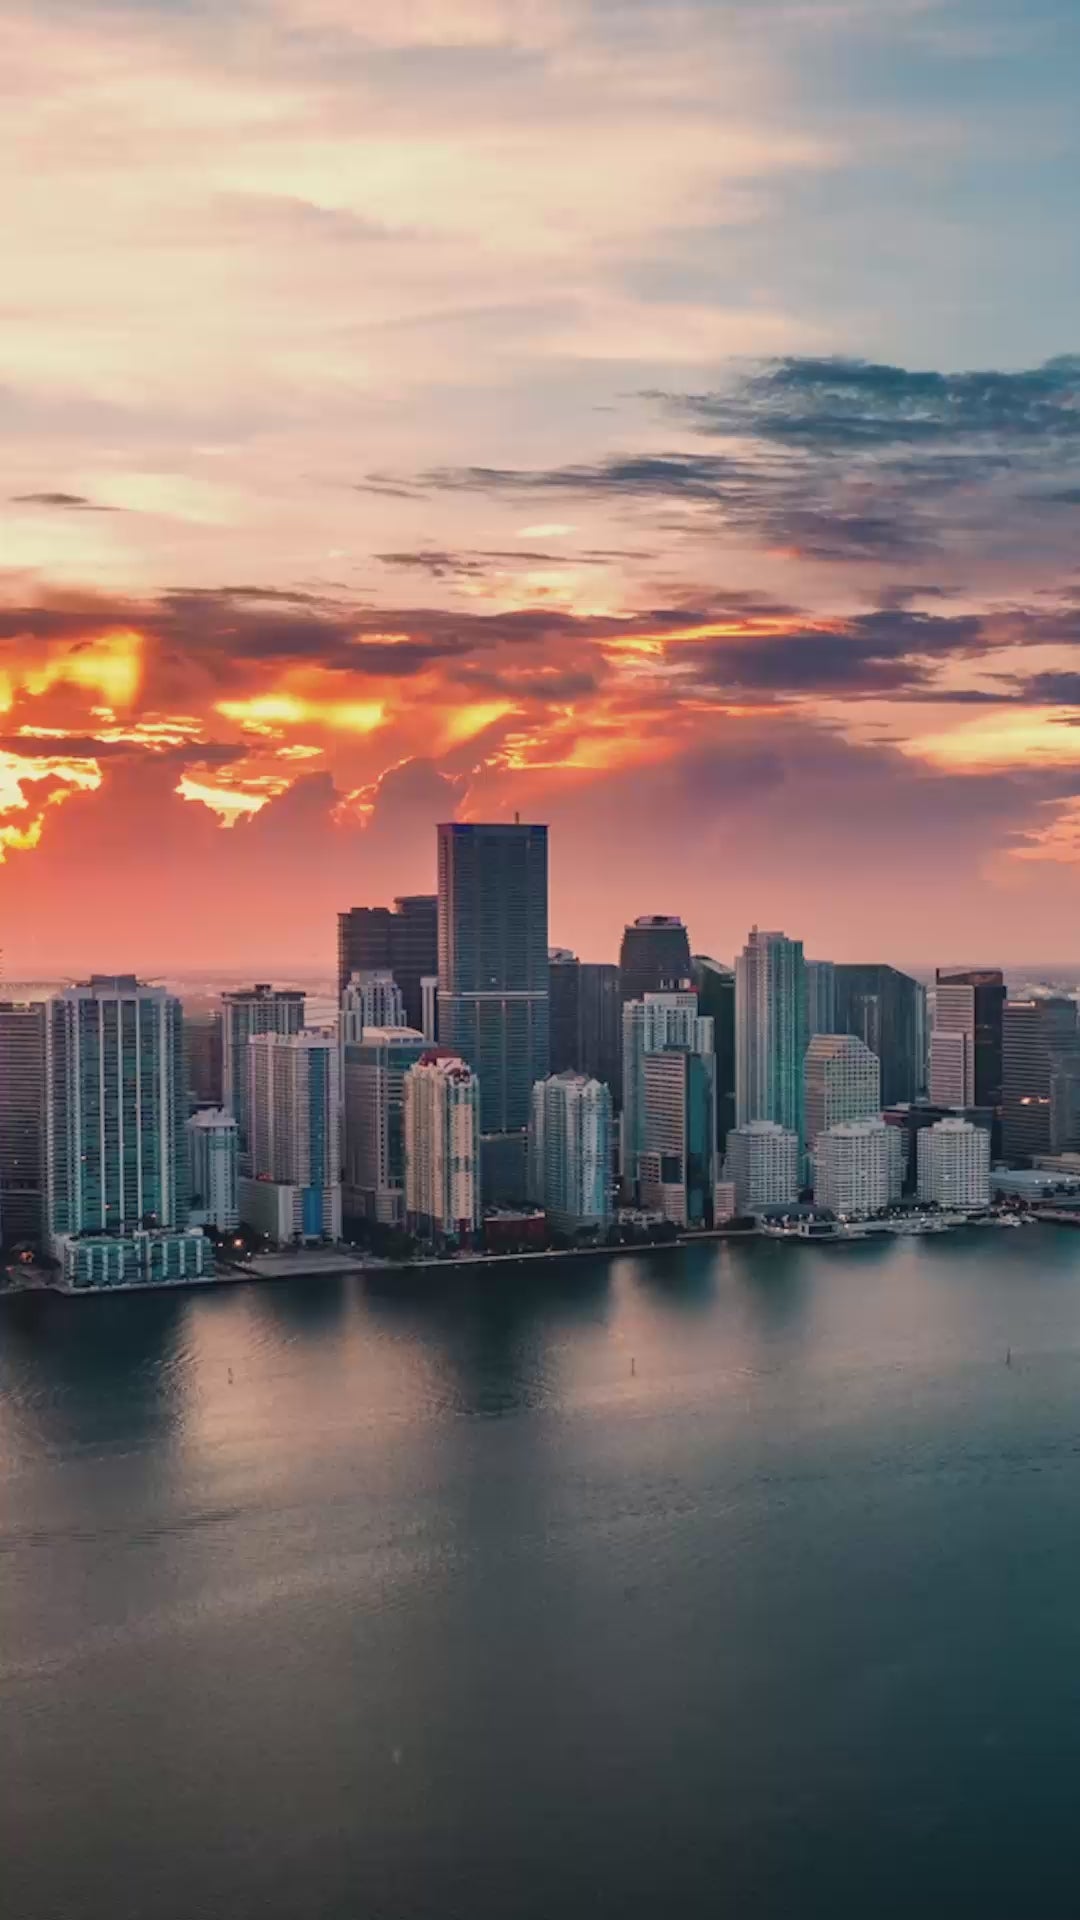 Miami - Video Ad